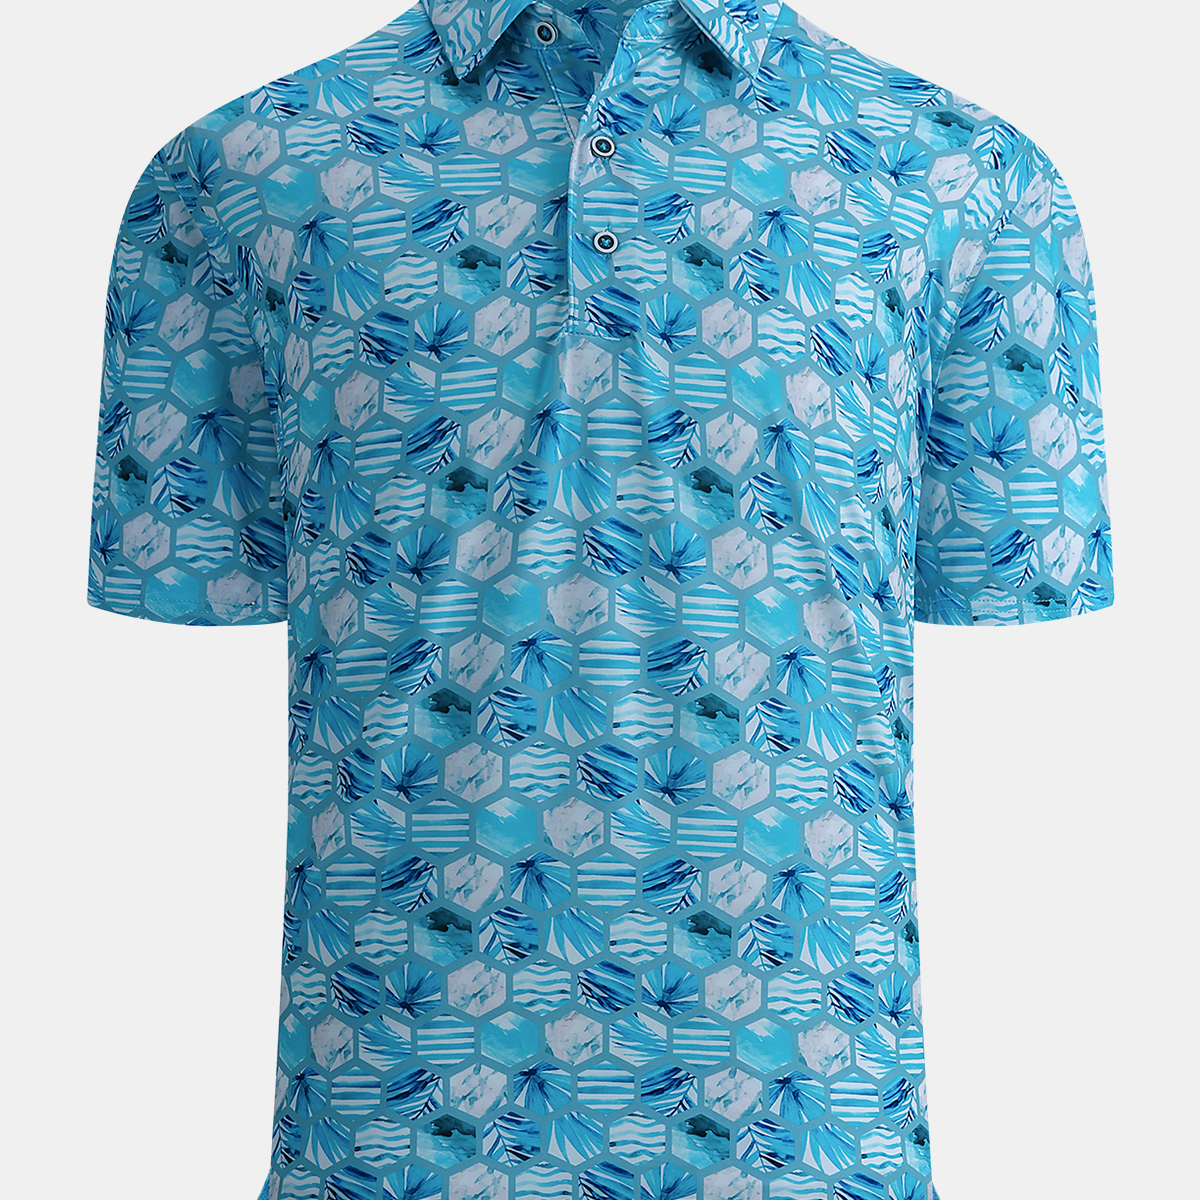 Men's Tropical Print Moisture Wicking Performance Polo Short Sleeve Summer Hawaiian Golf Shirt